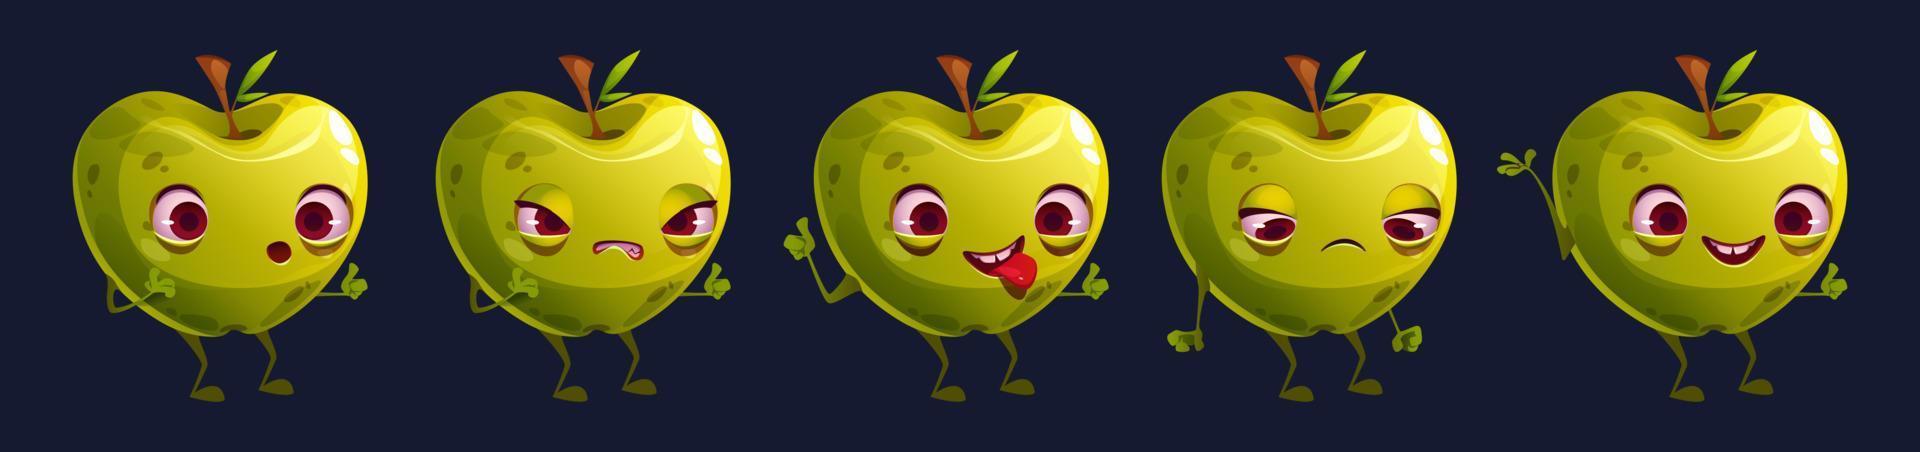 conjunto de emoji de rosto de personagem de fruta de maçã verde bonito vetor